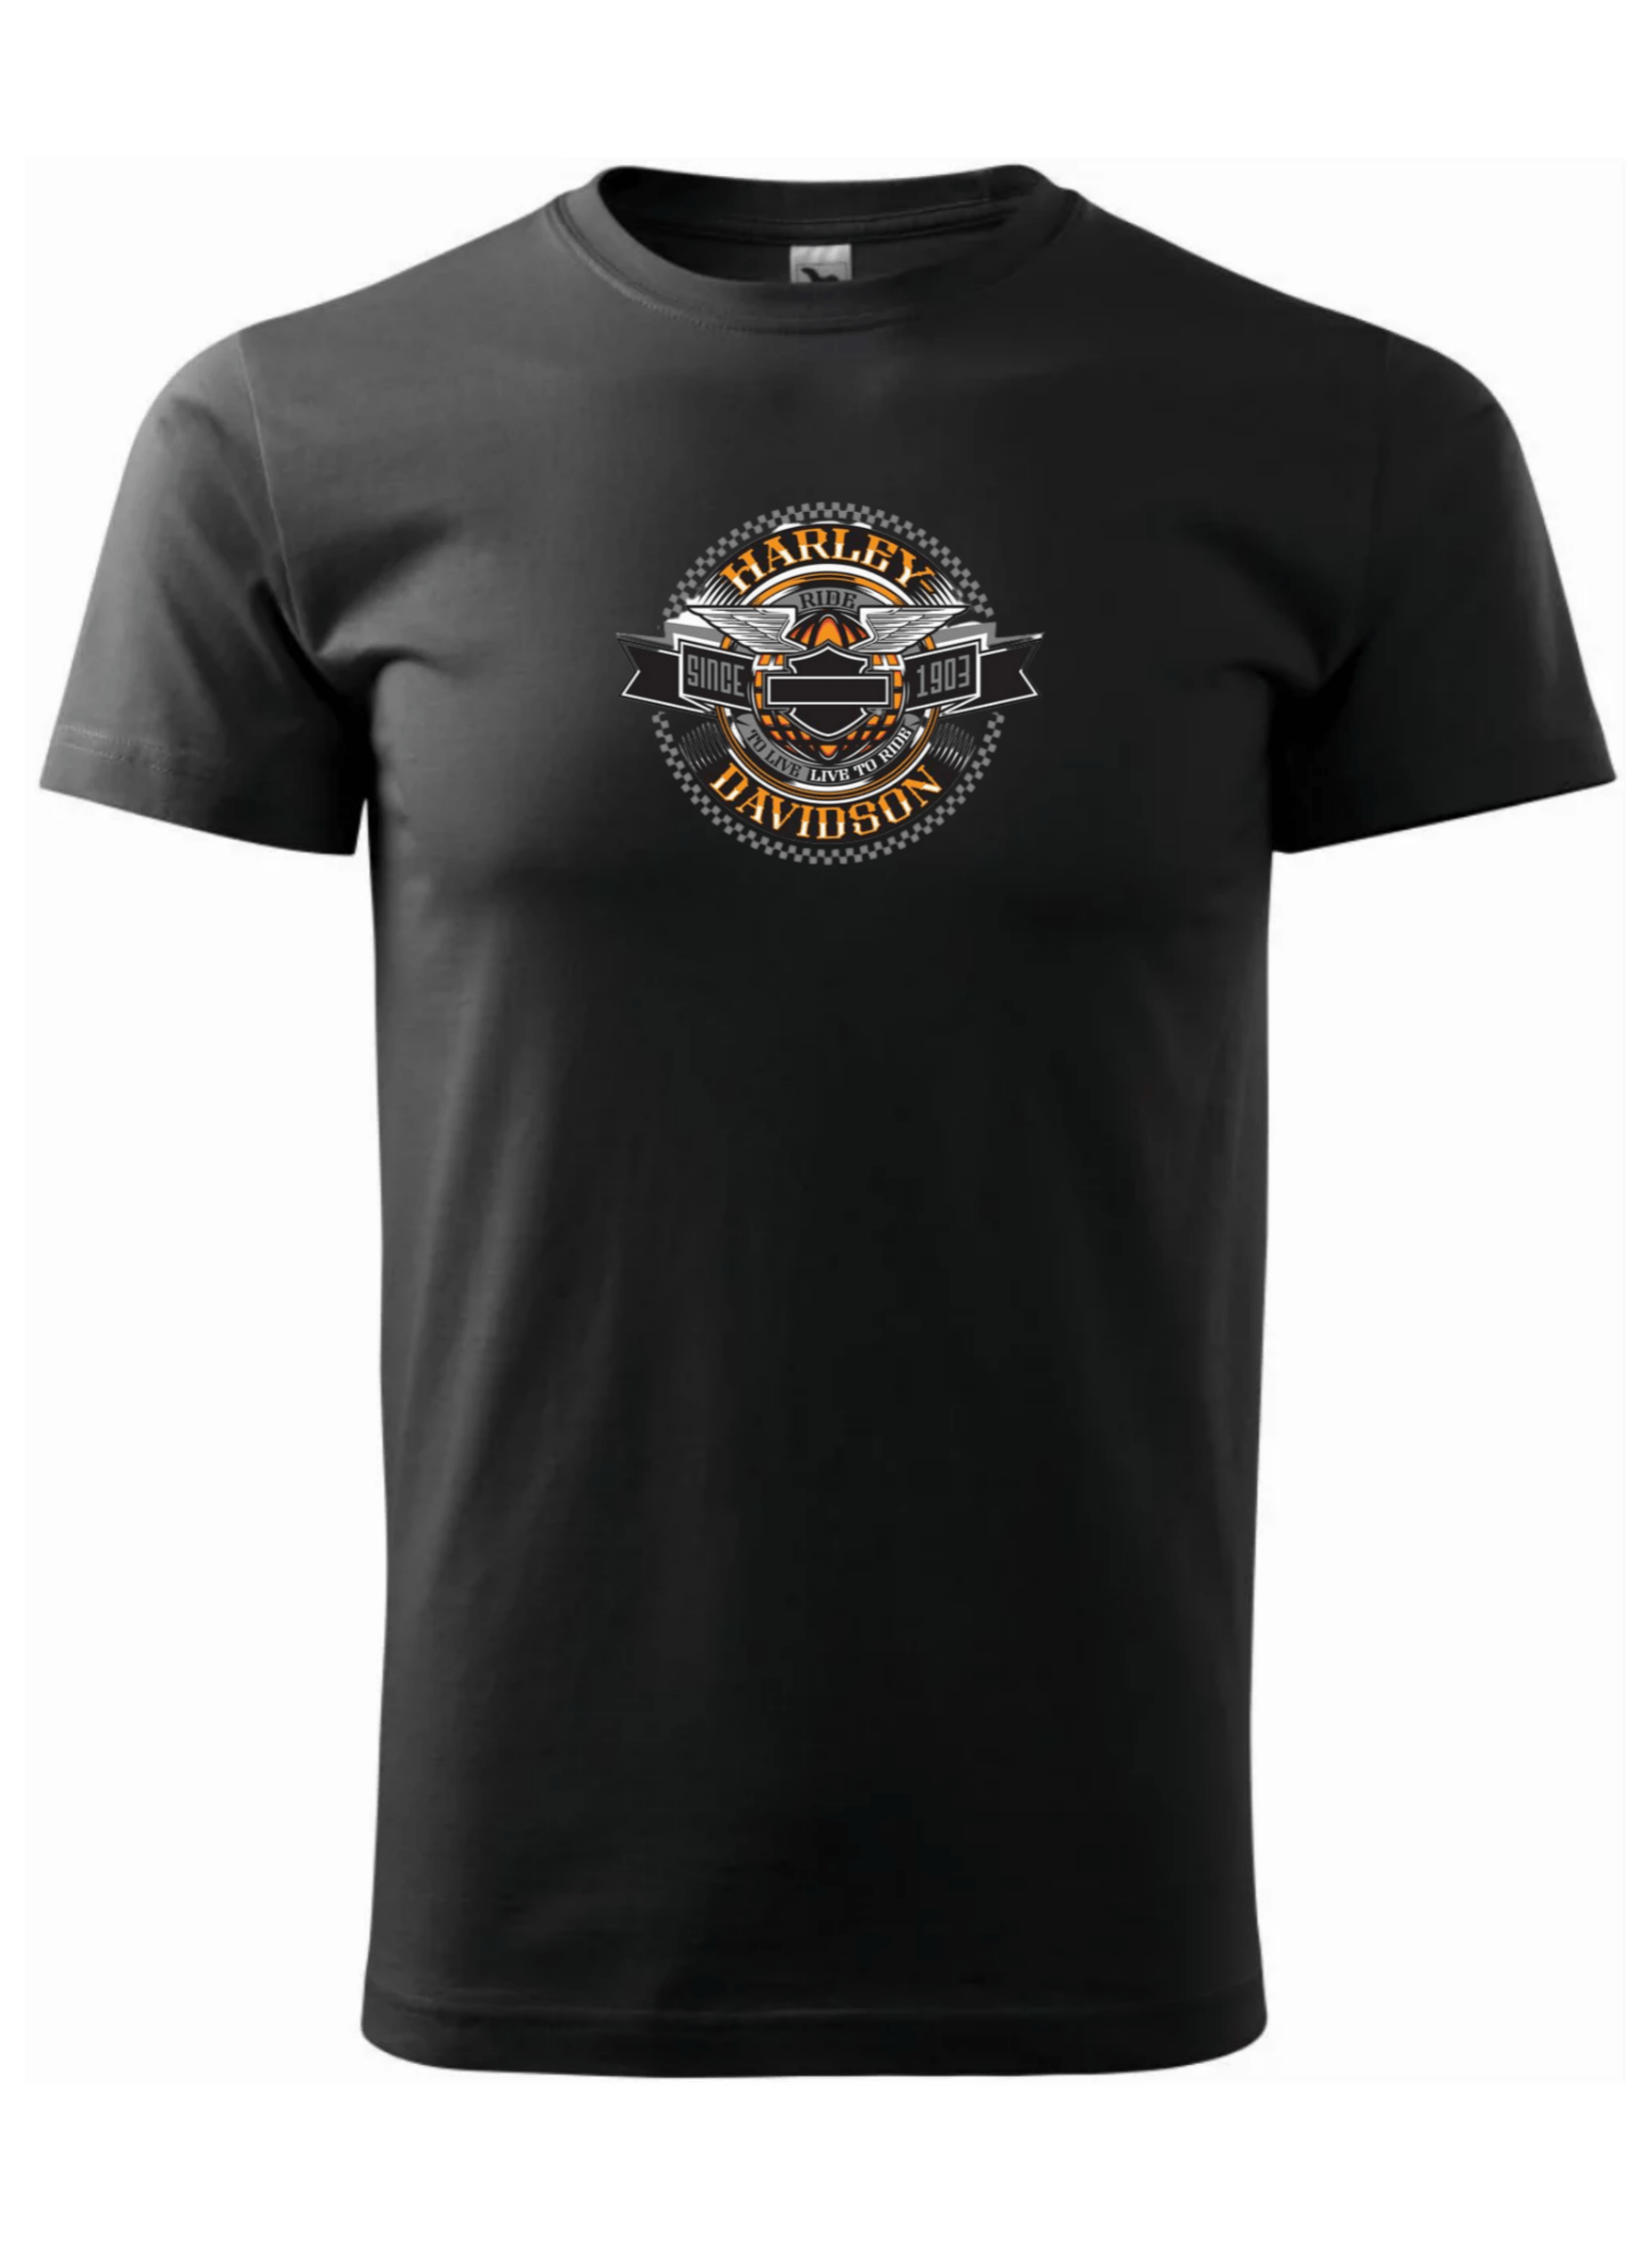 Pánské tričko s potiskem značky Harley Davidson 37